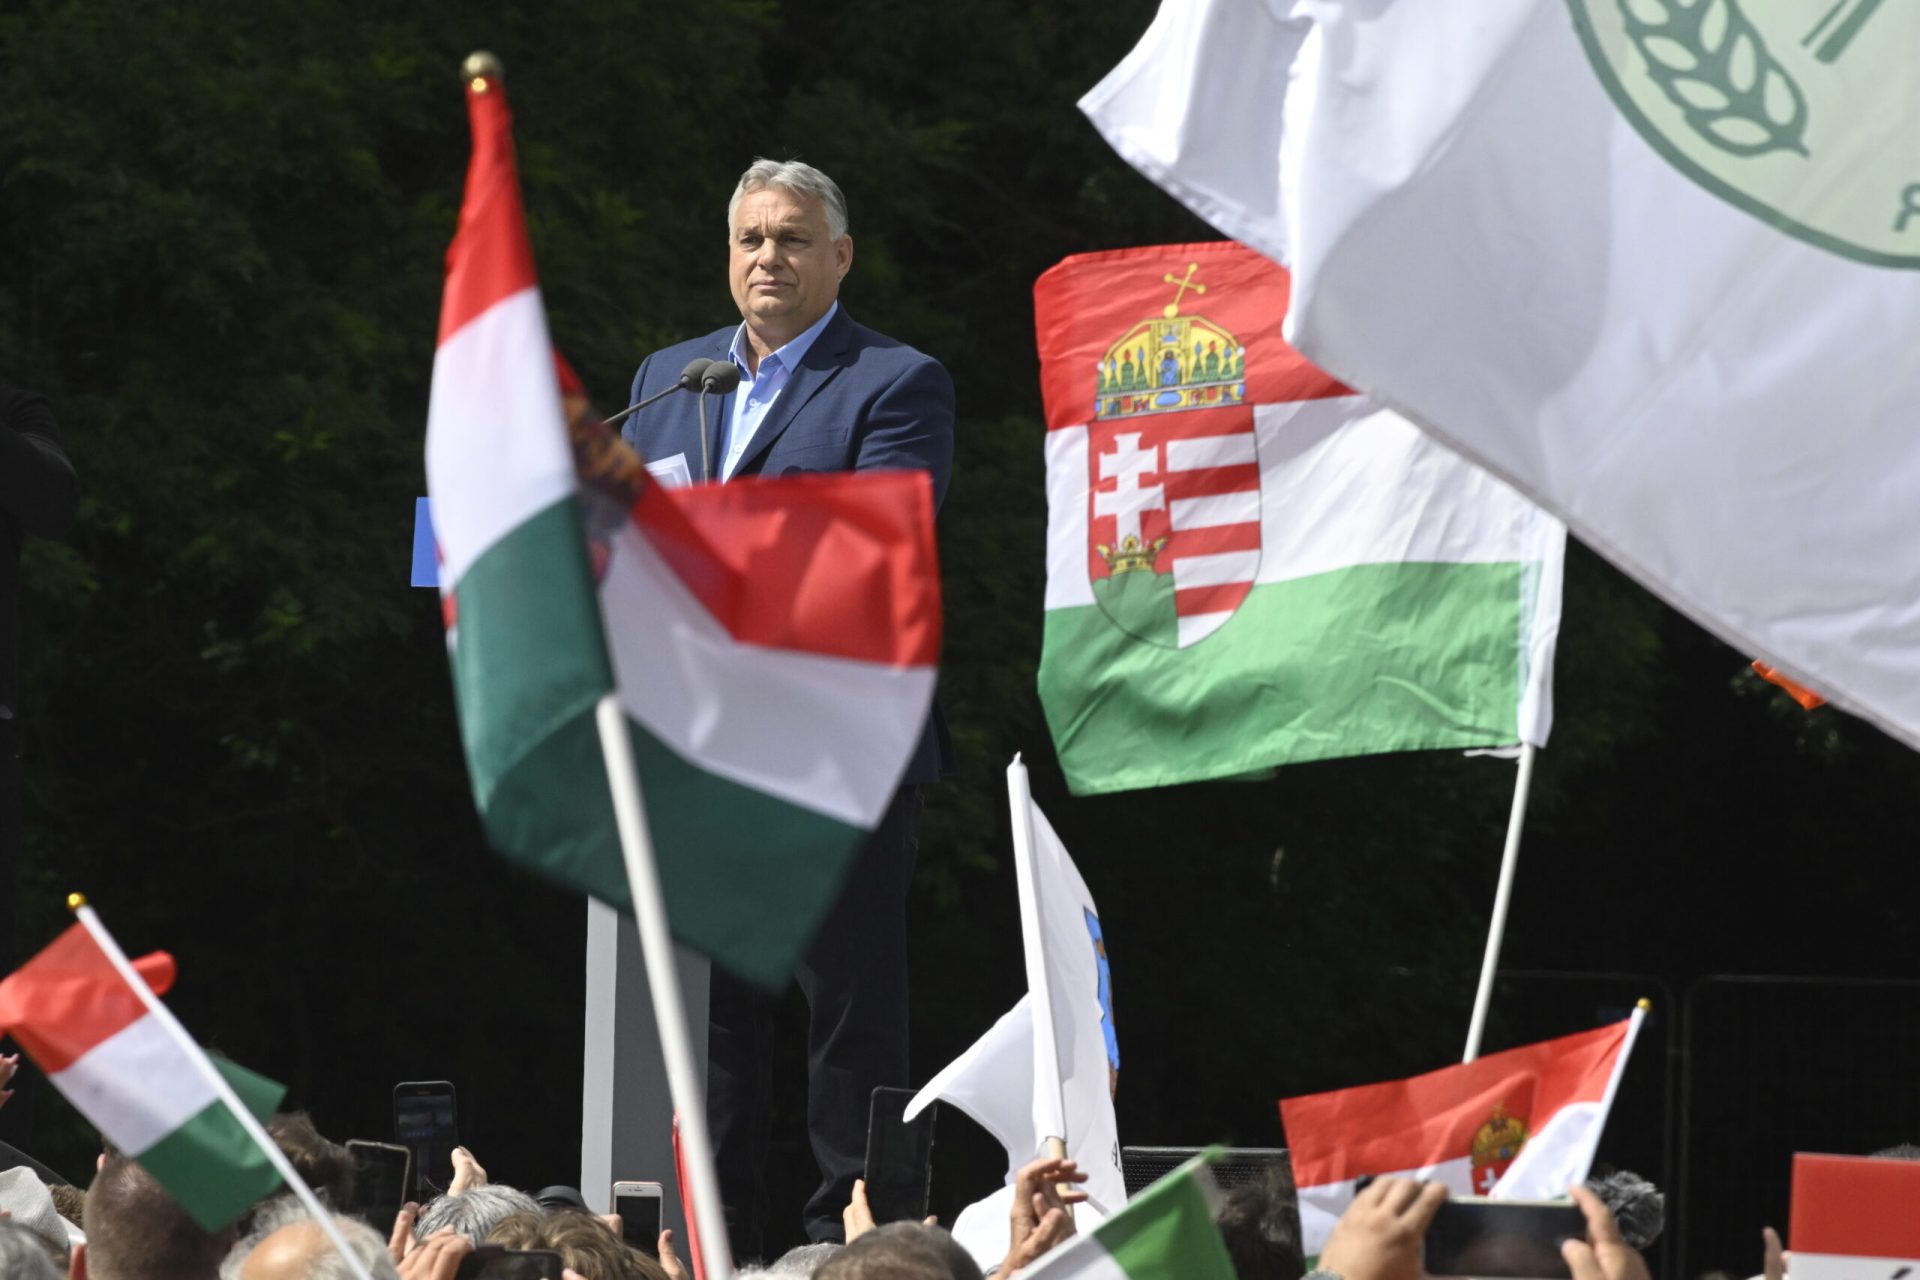 Az esőben érzi igazán otthon magát Orbán Viktor: Megmutatta az unokákat is a nyilvánosságnak